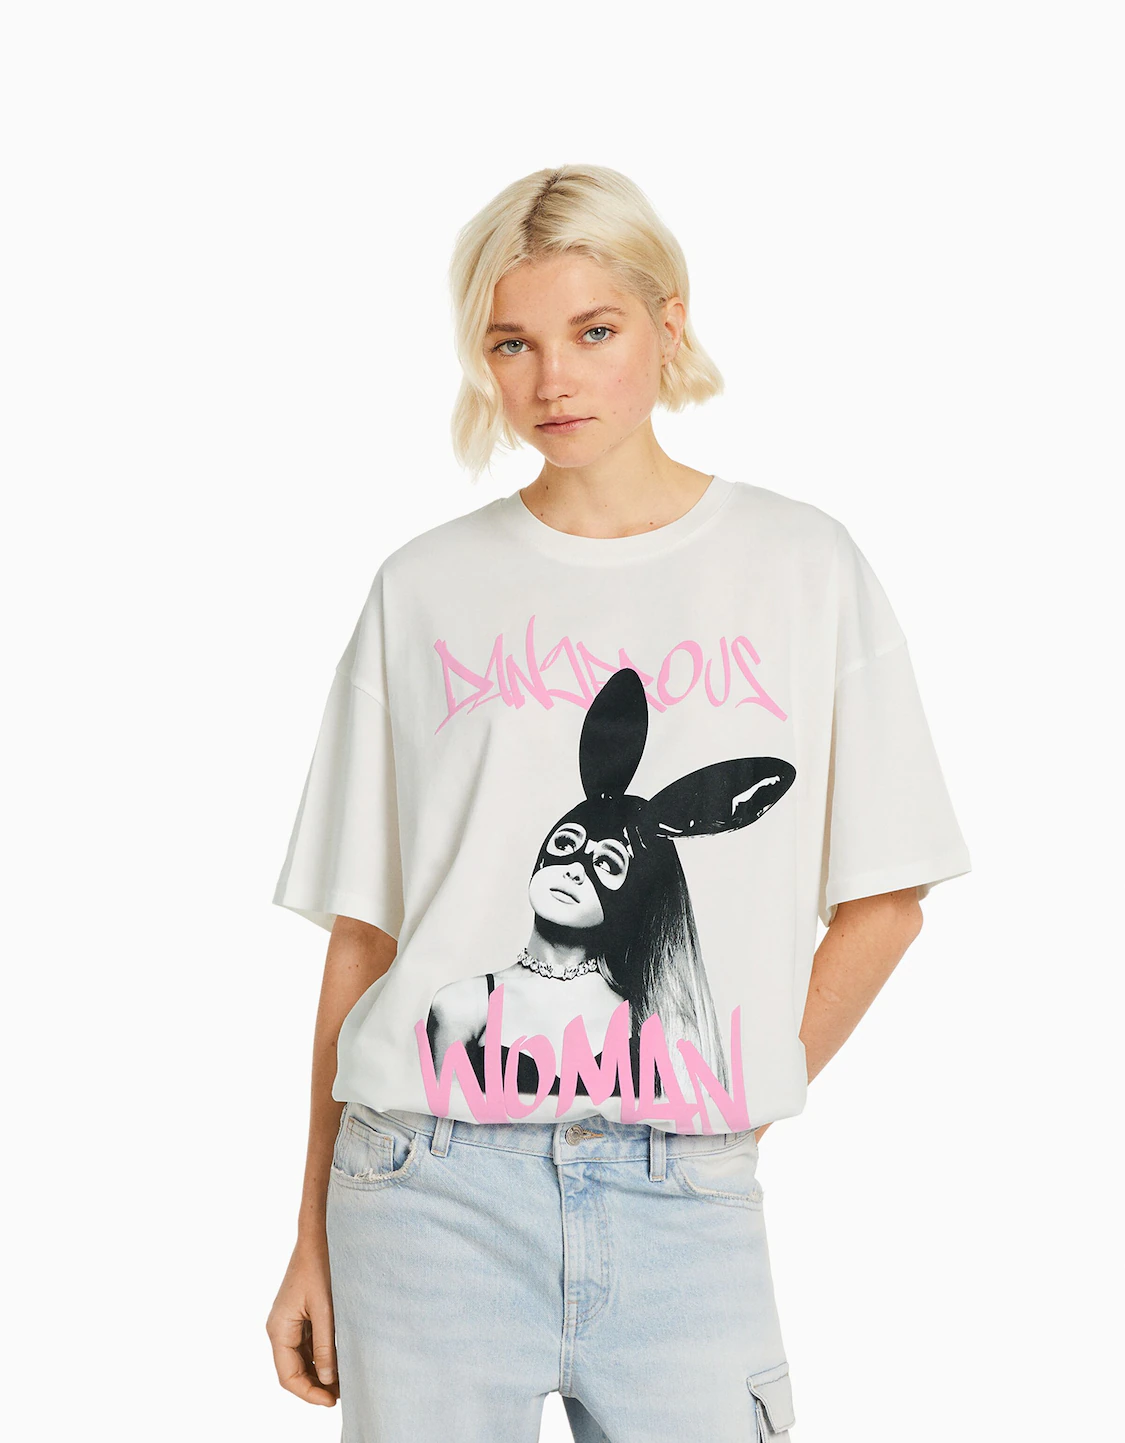 Camiseta Ariana manga corta print - Corta - Mujer Bershka